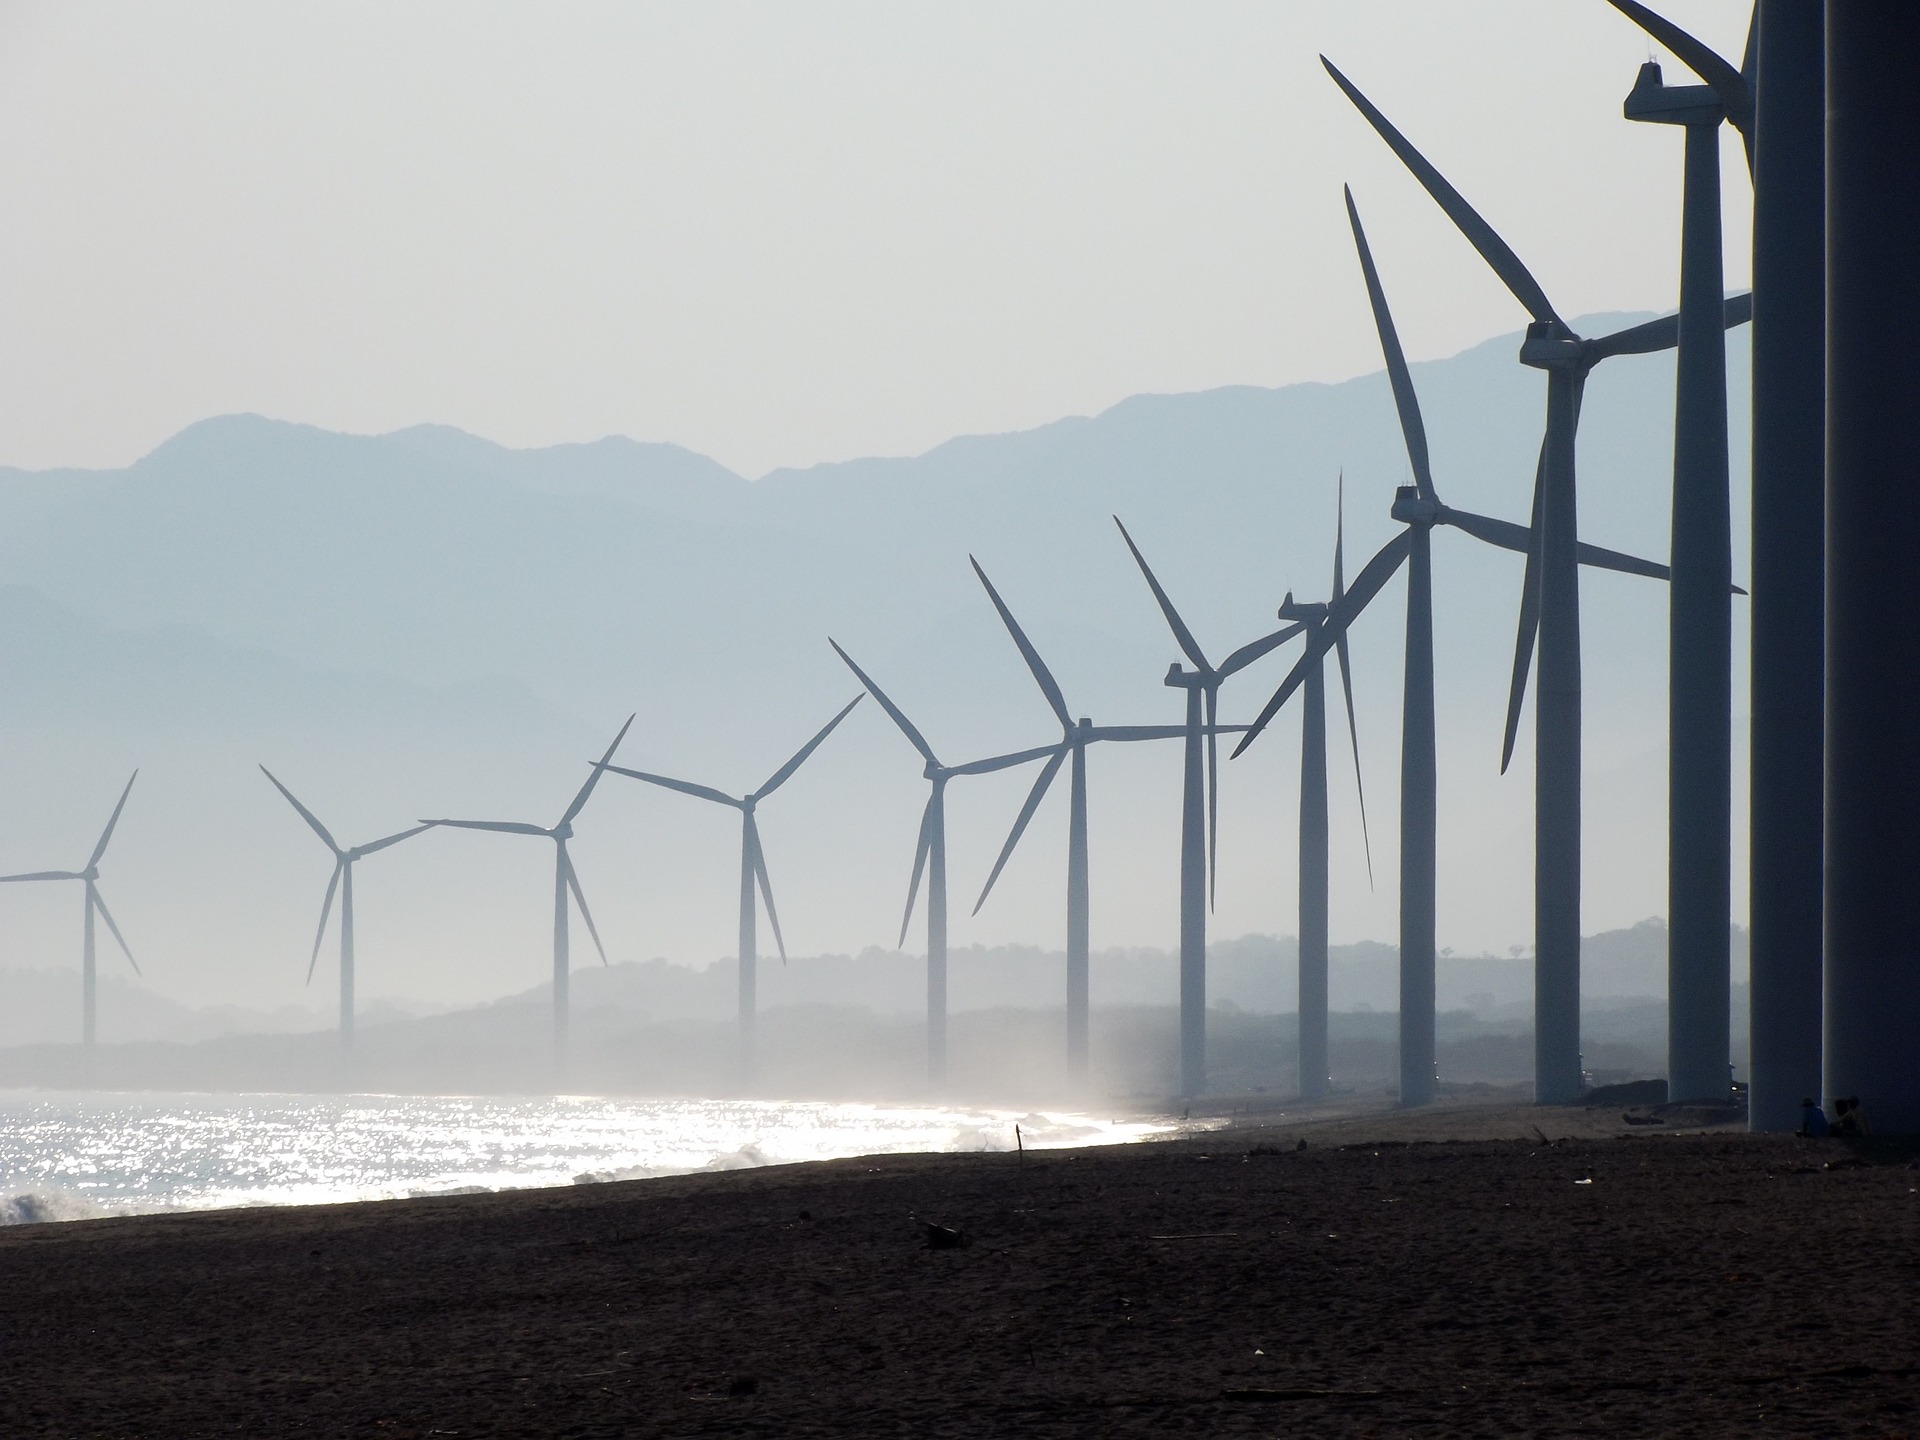 45% da matriz energética do Brasil advém de fontes renováveis devido aos investimentos em economia de baixo carbono ao produzir hidrogênio verde, energia solar e parques eólicos em alto mar